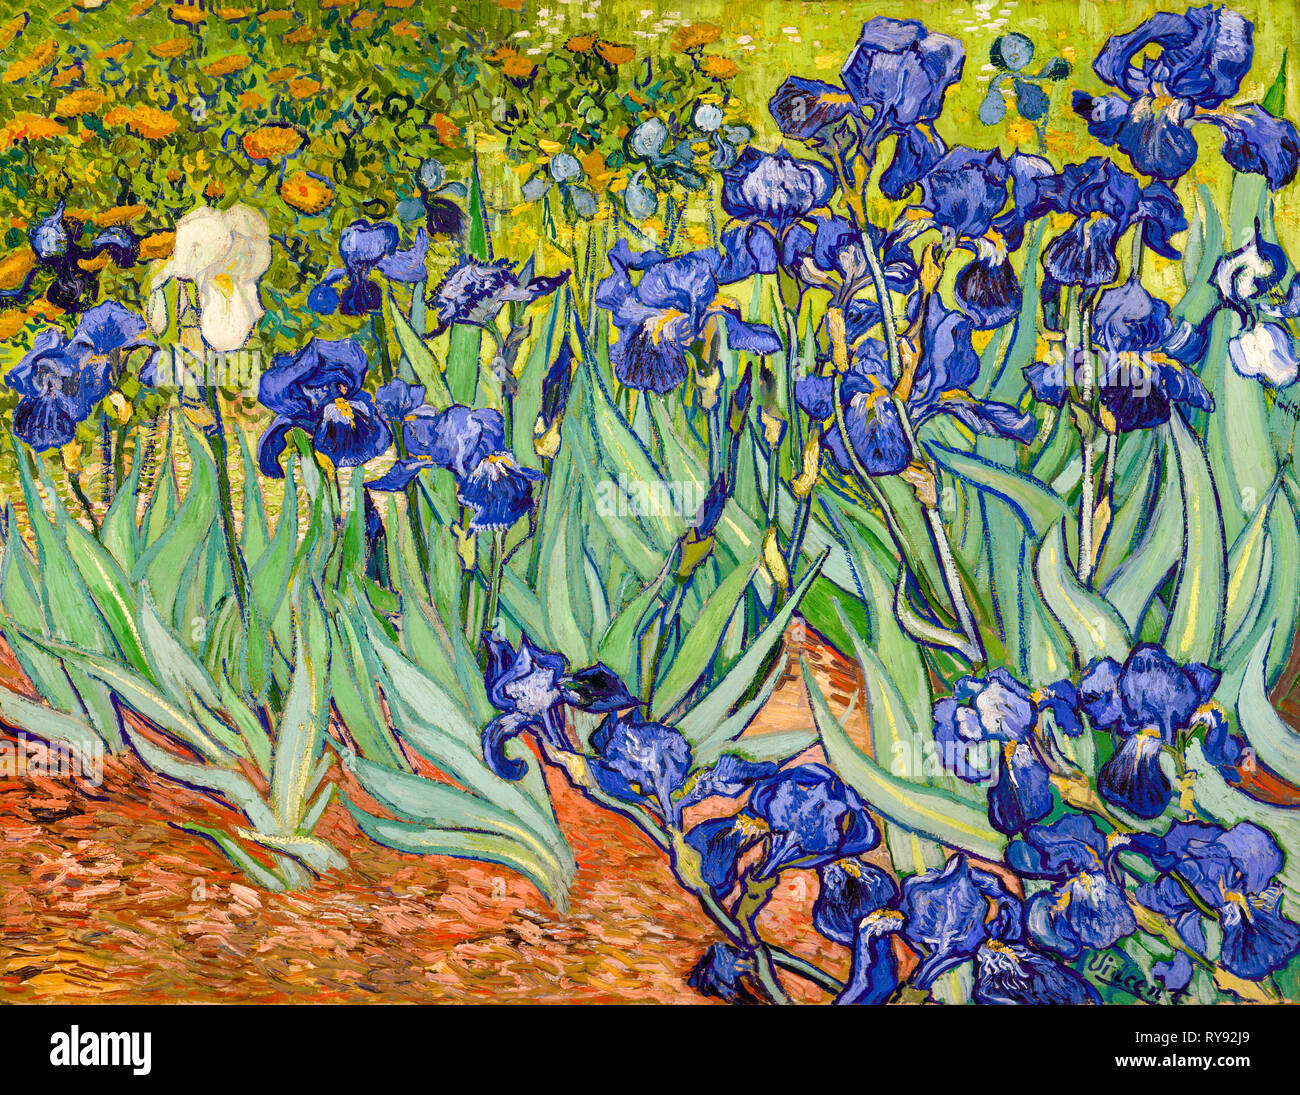 Lirios Pintura Post Impresionista De Vincent Van Gogh Fotograf A